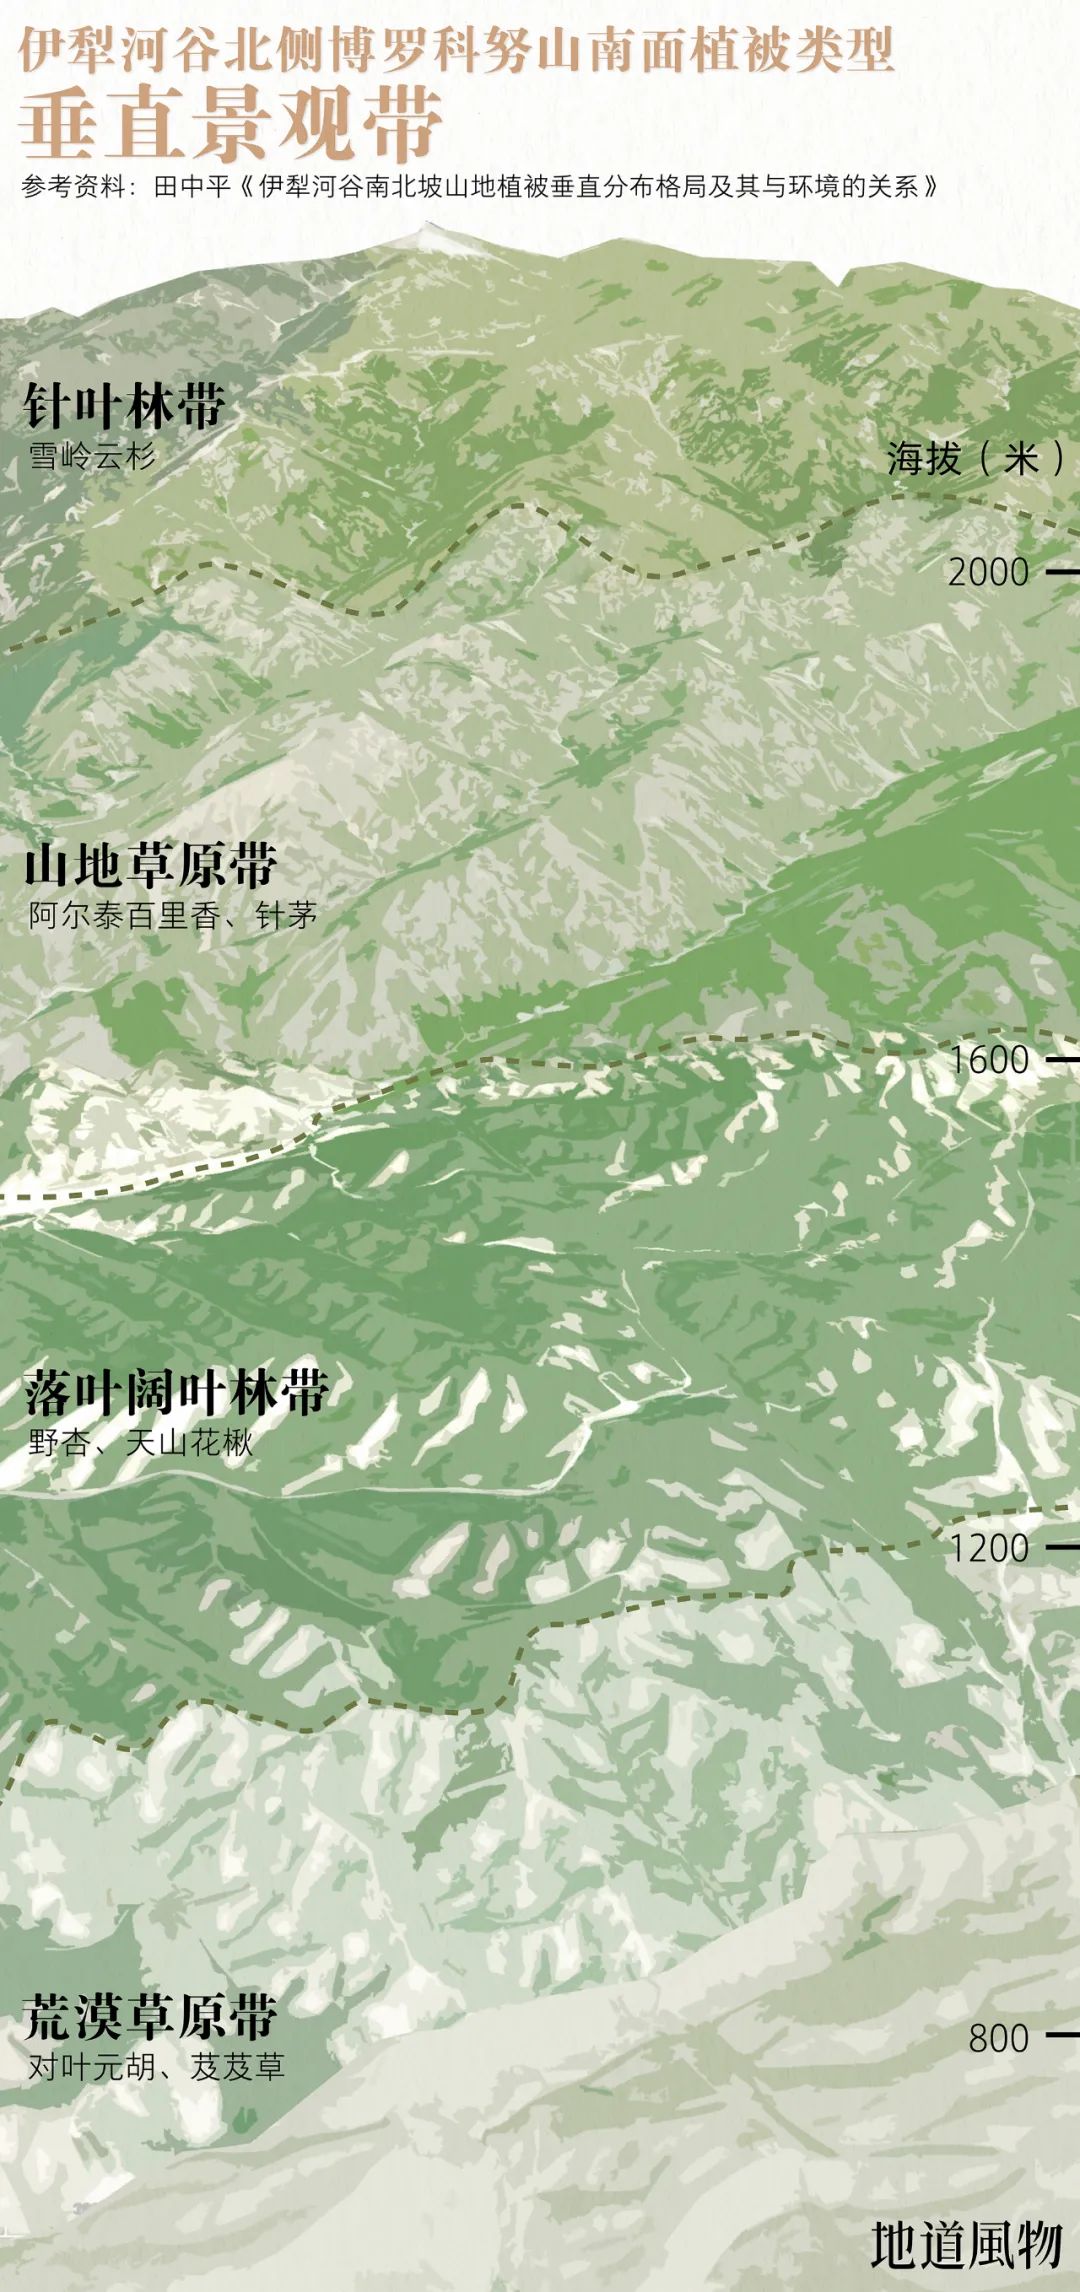 ▲ 迎风的伊犁河谷北侧，降水相对丰富，山地植被也更为茂盛。 制图 /F50BB